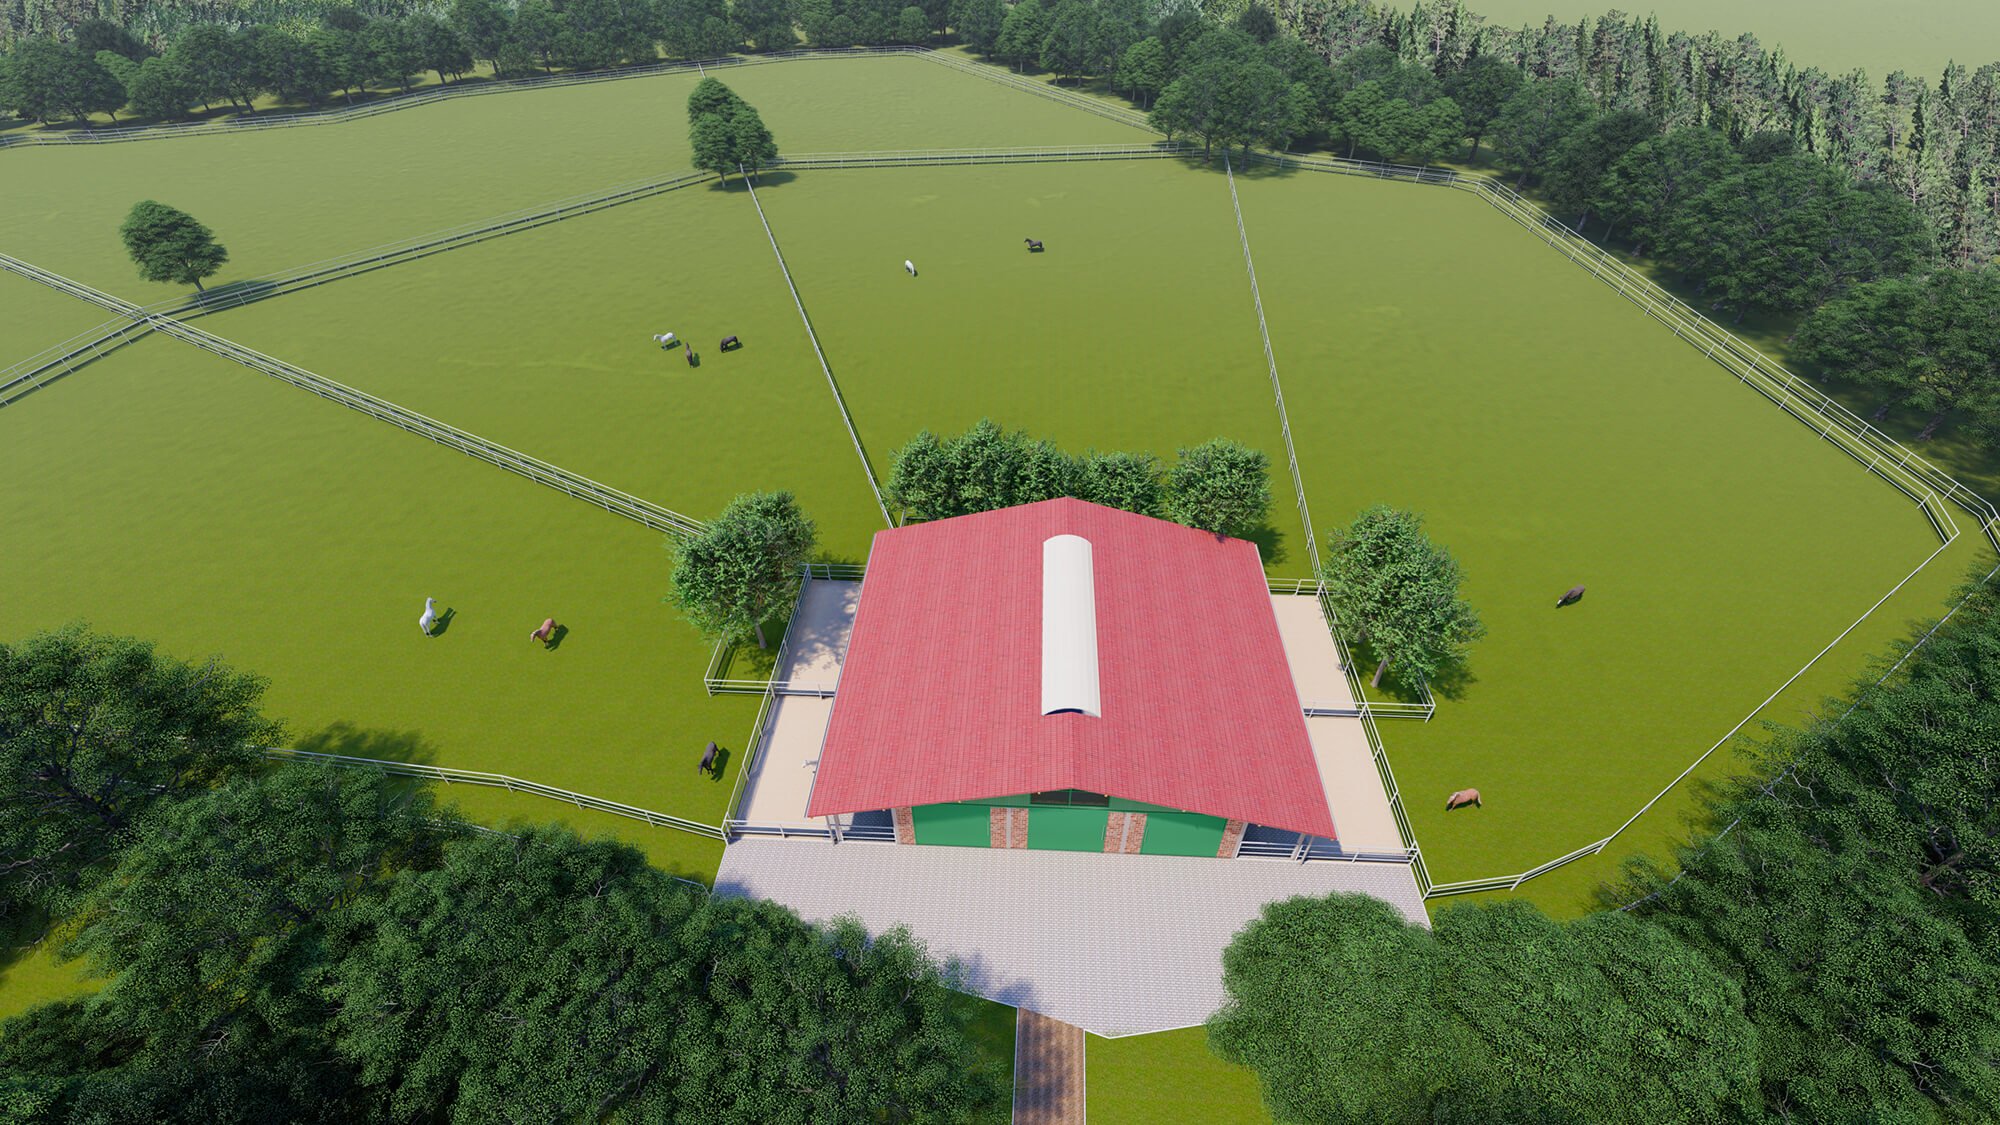 Luftansicht einer modernen Reithalle umgeben von Weideflächen, entworfen für optimale Pferdehaltung